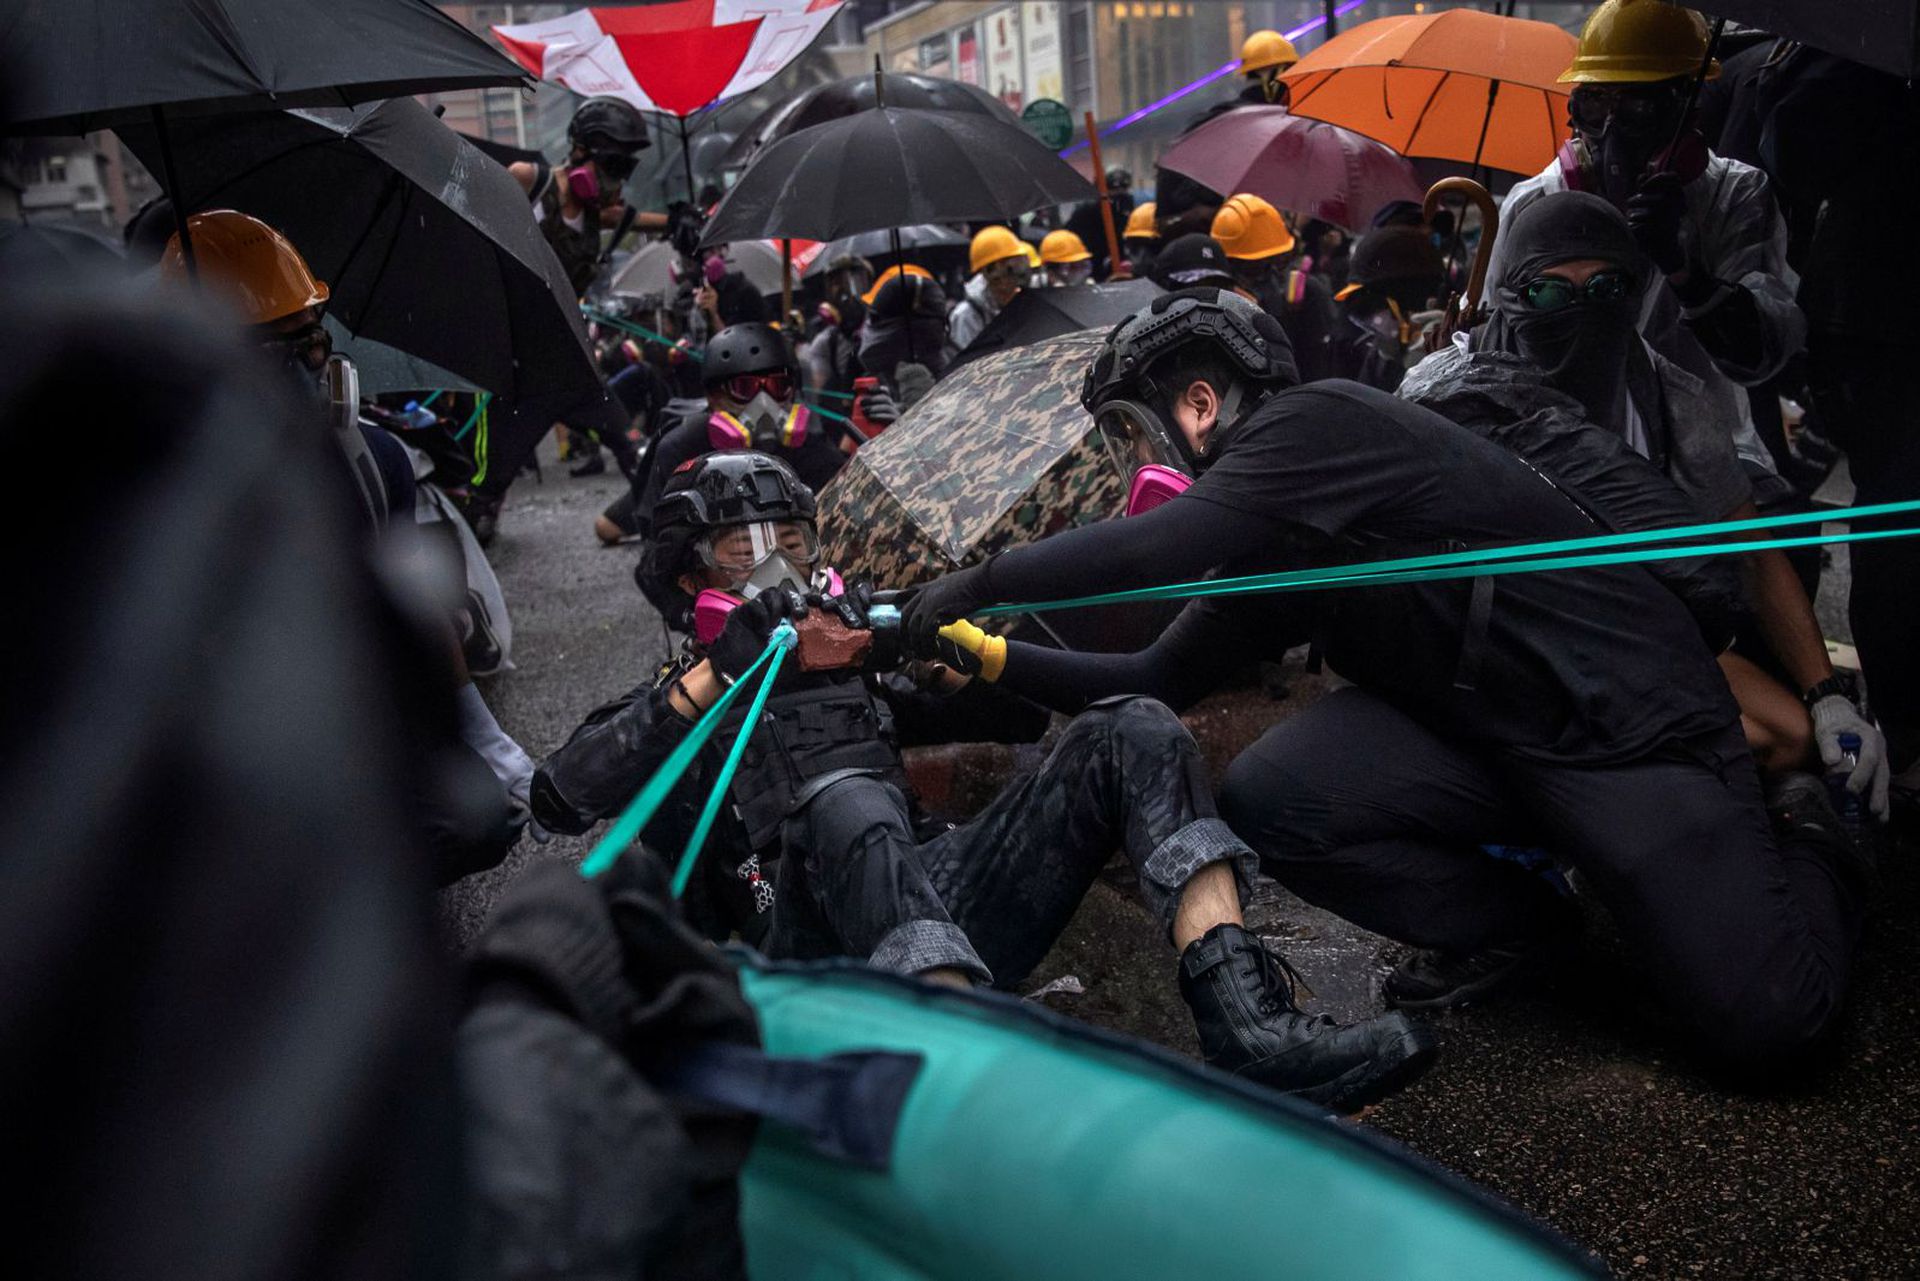 港警 修例风波至今共8001人被捕 多维新闻 香港